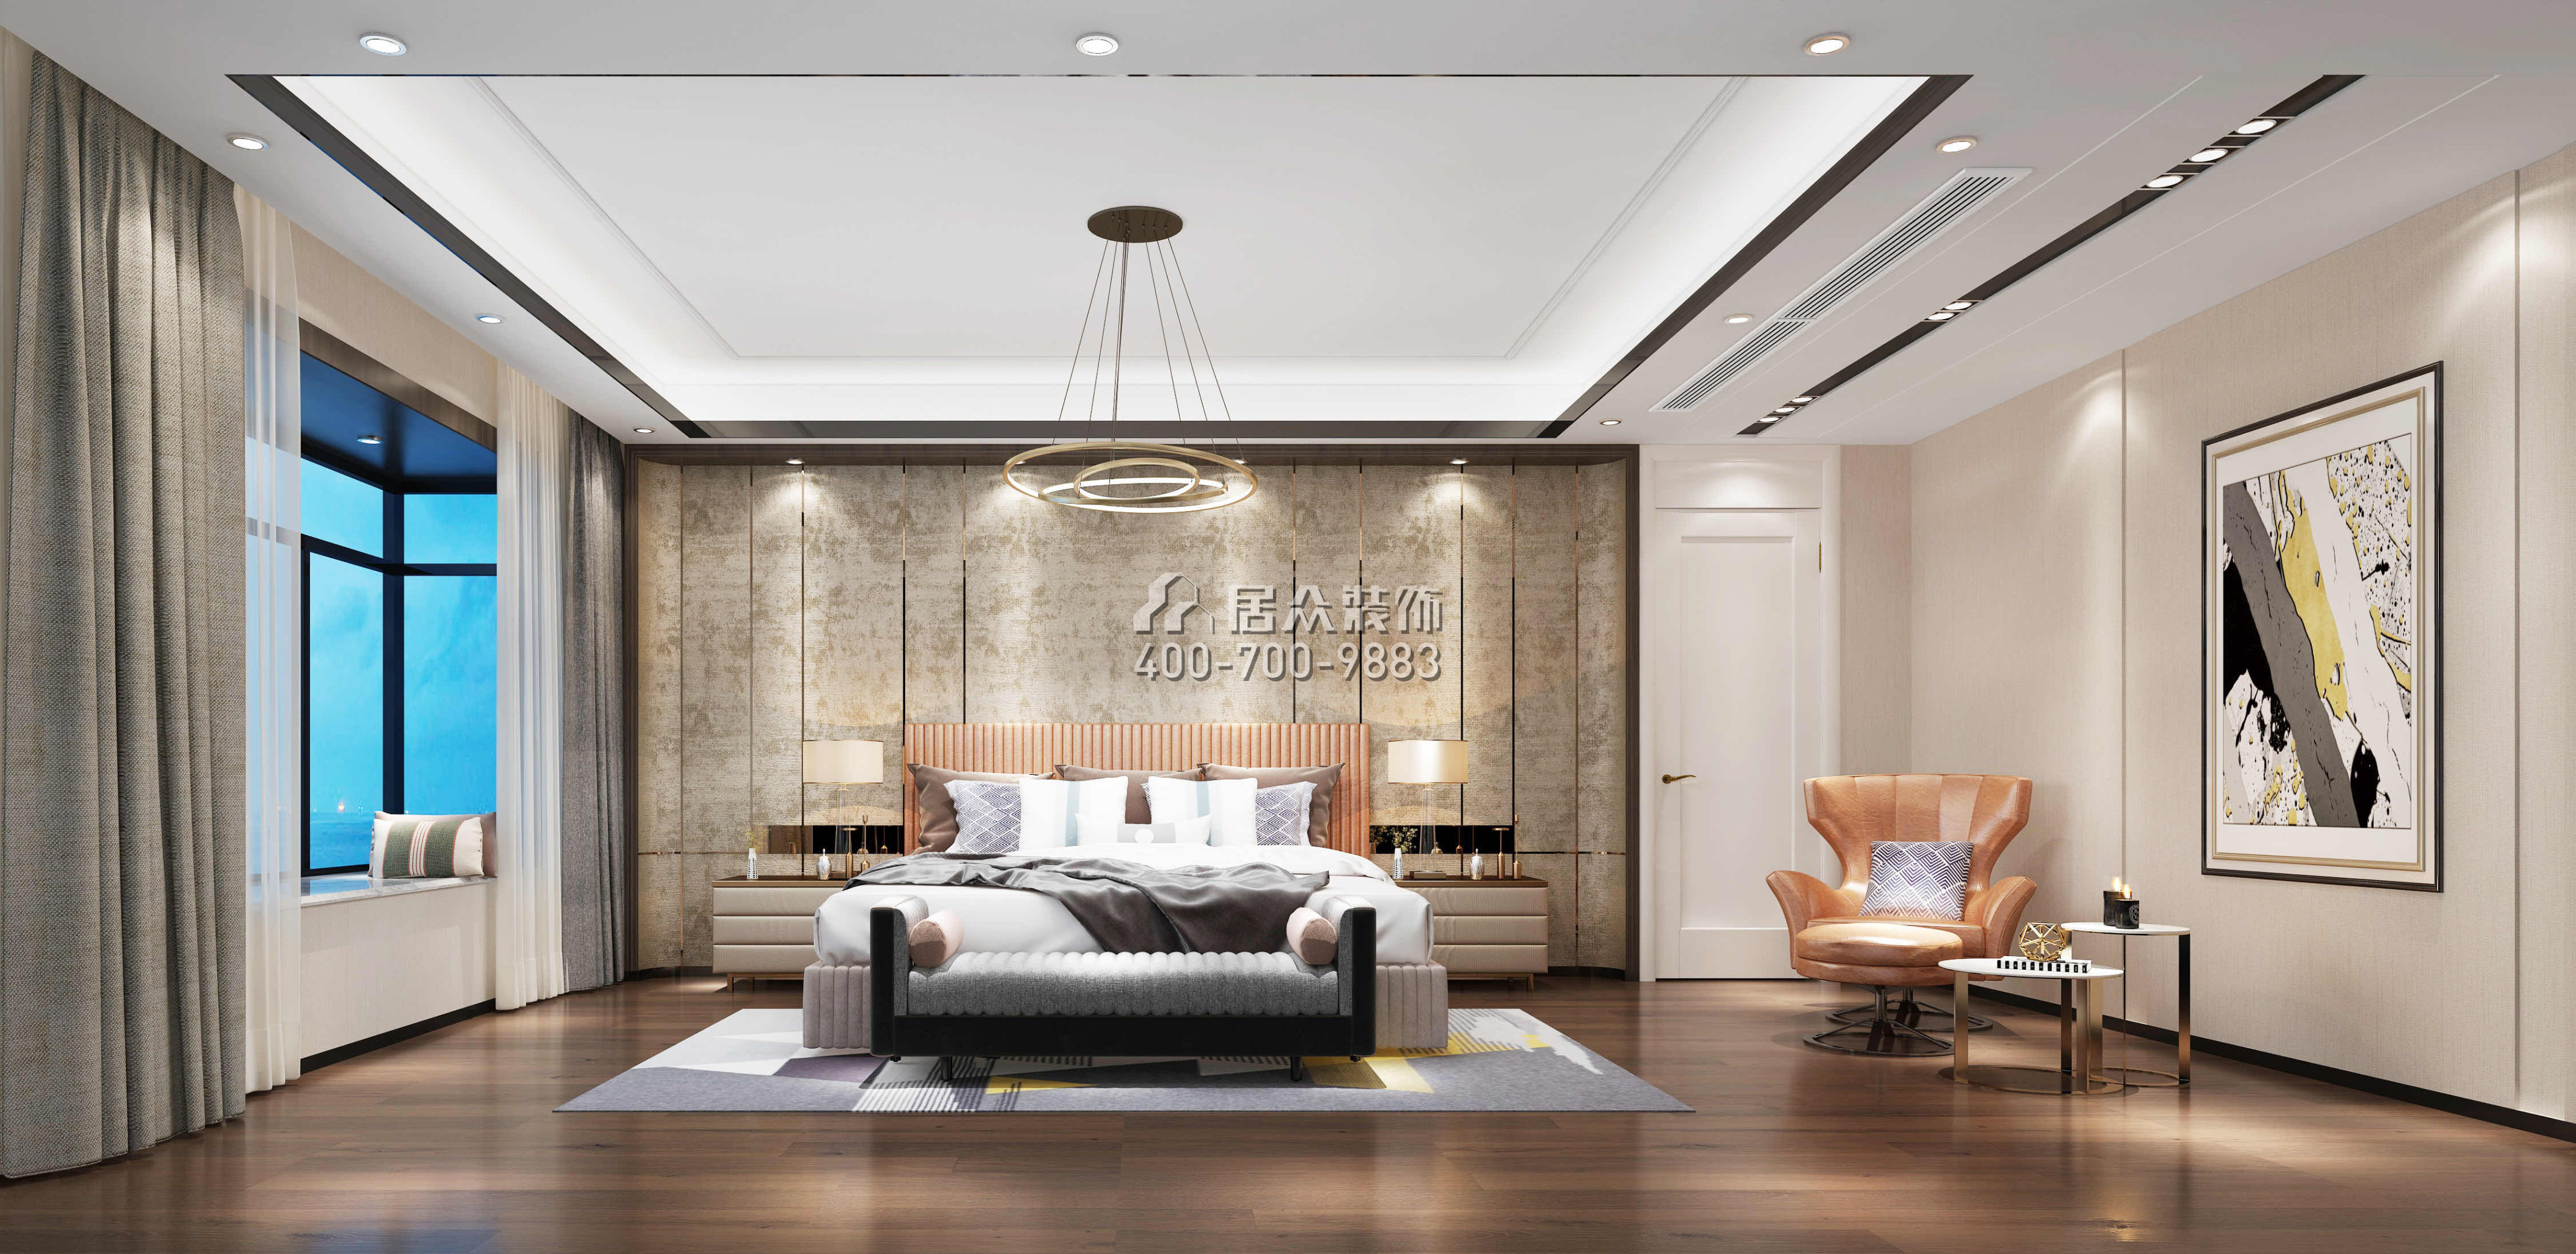 中海银海湾500平方米现代简约风格复式户型卧室kok电竞平台效果图